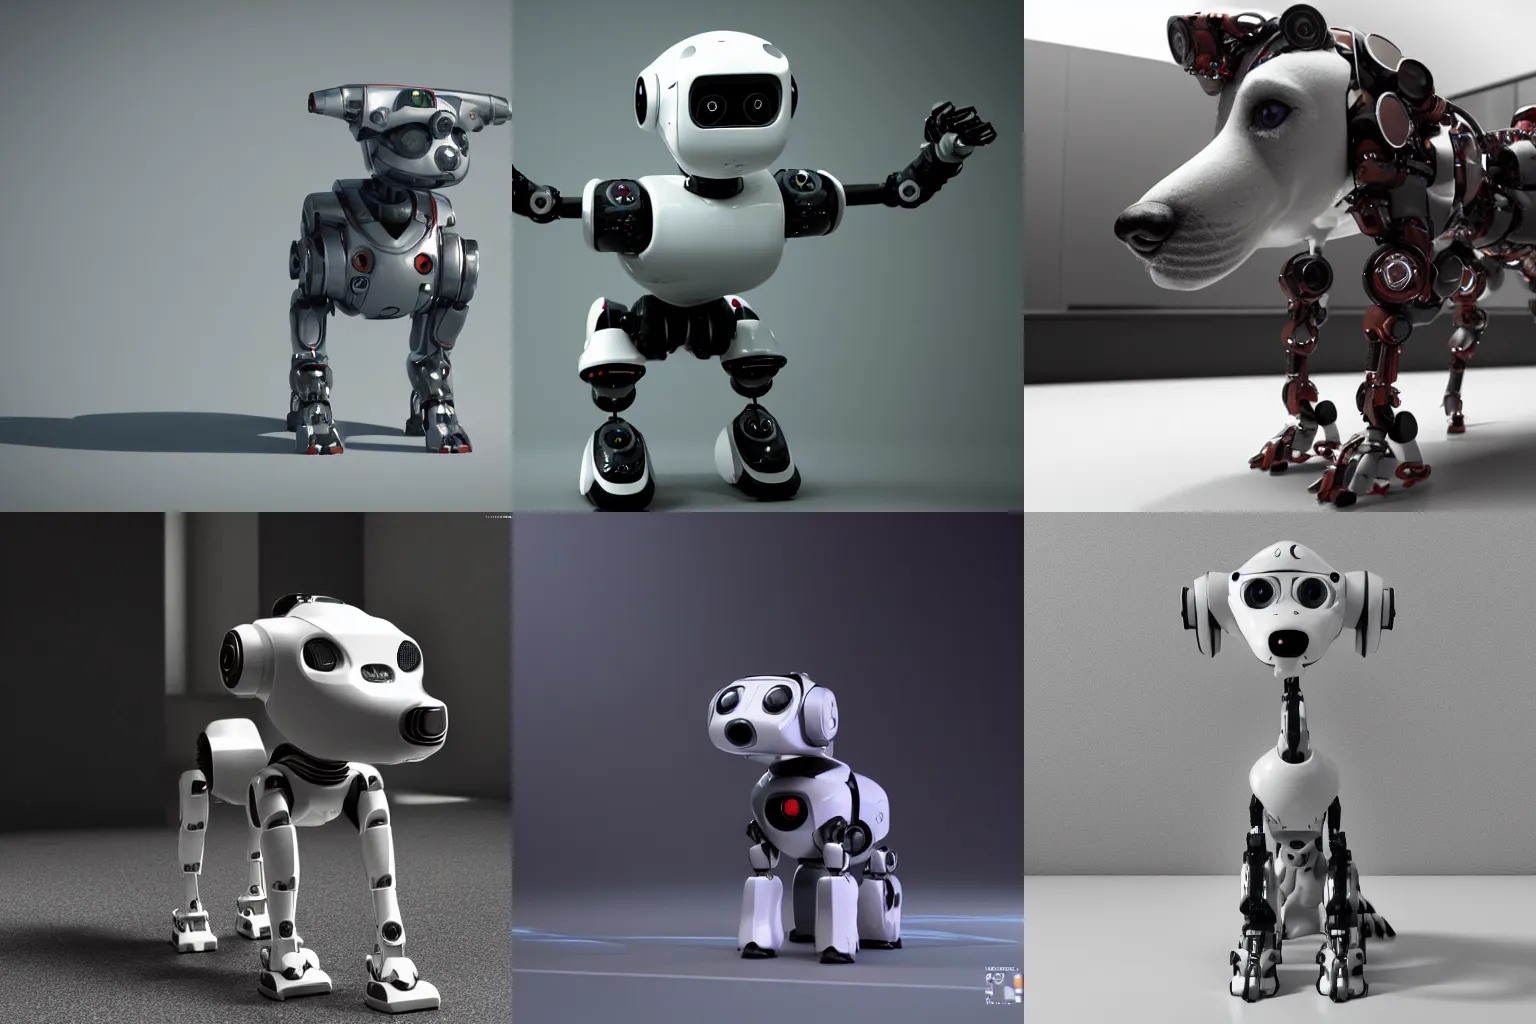 Prompt: A robot dog, octane render